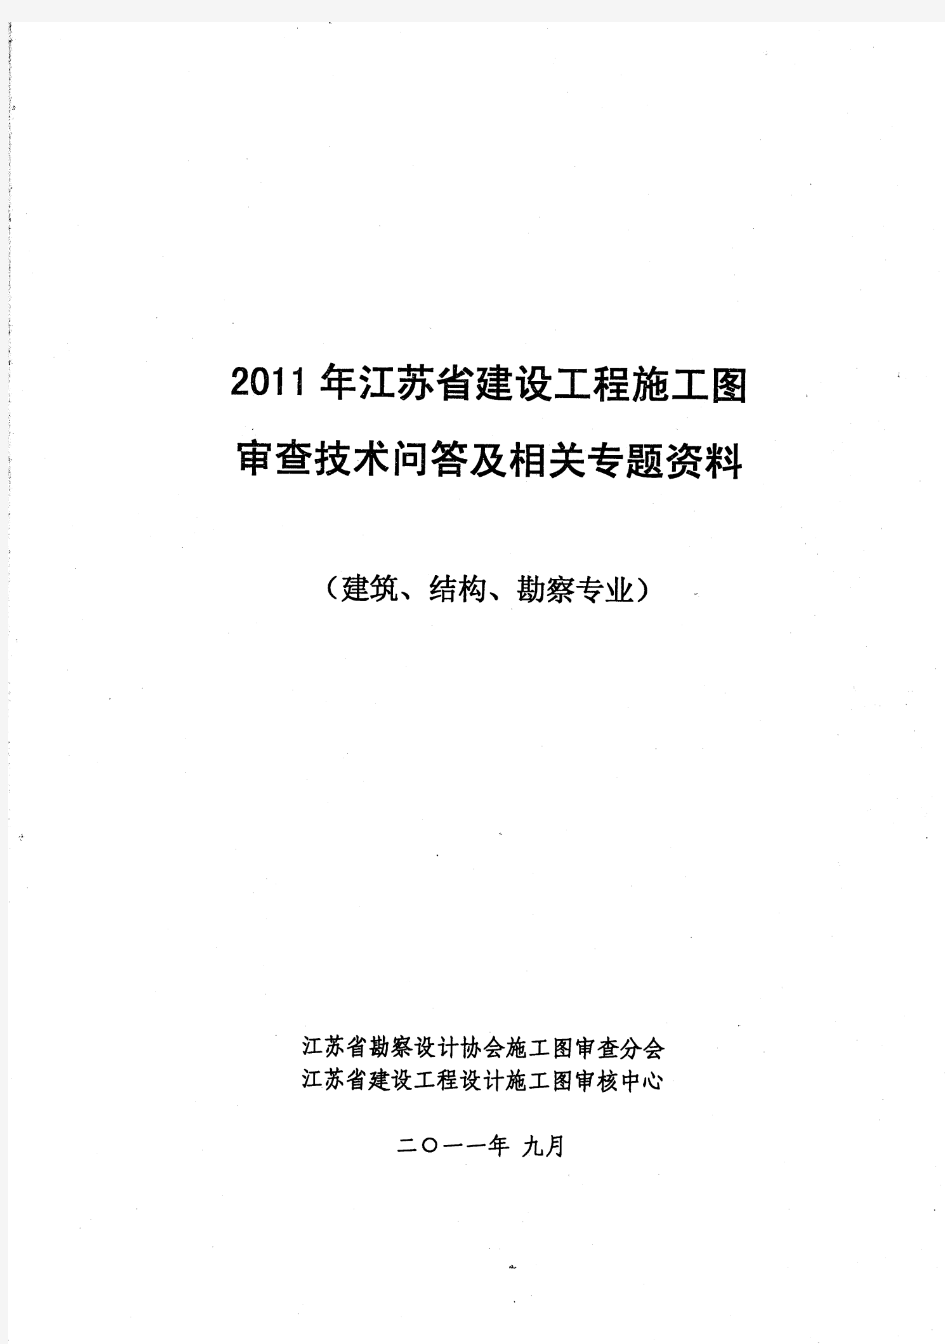 2011年江苏省建设工程施工图审查技术问答及相关专题资料